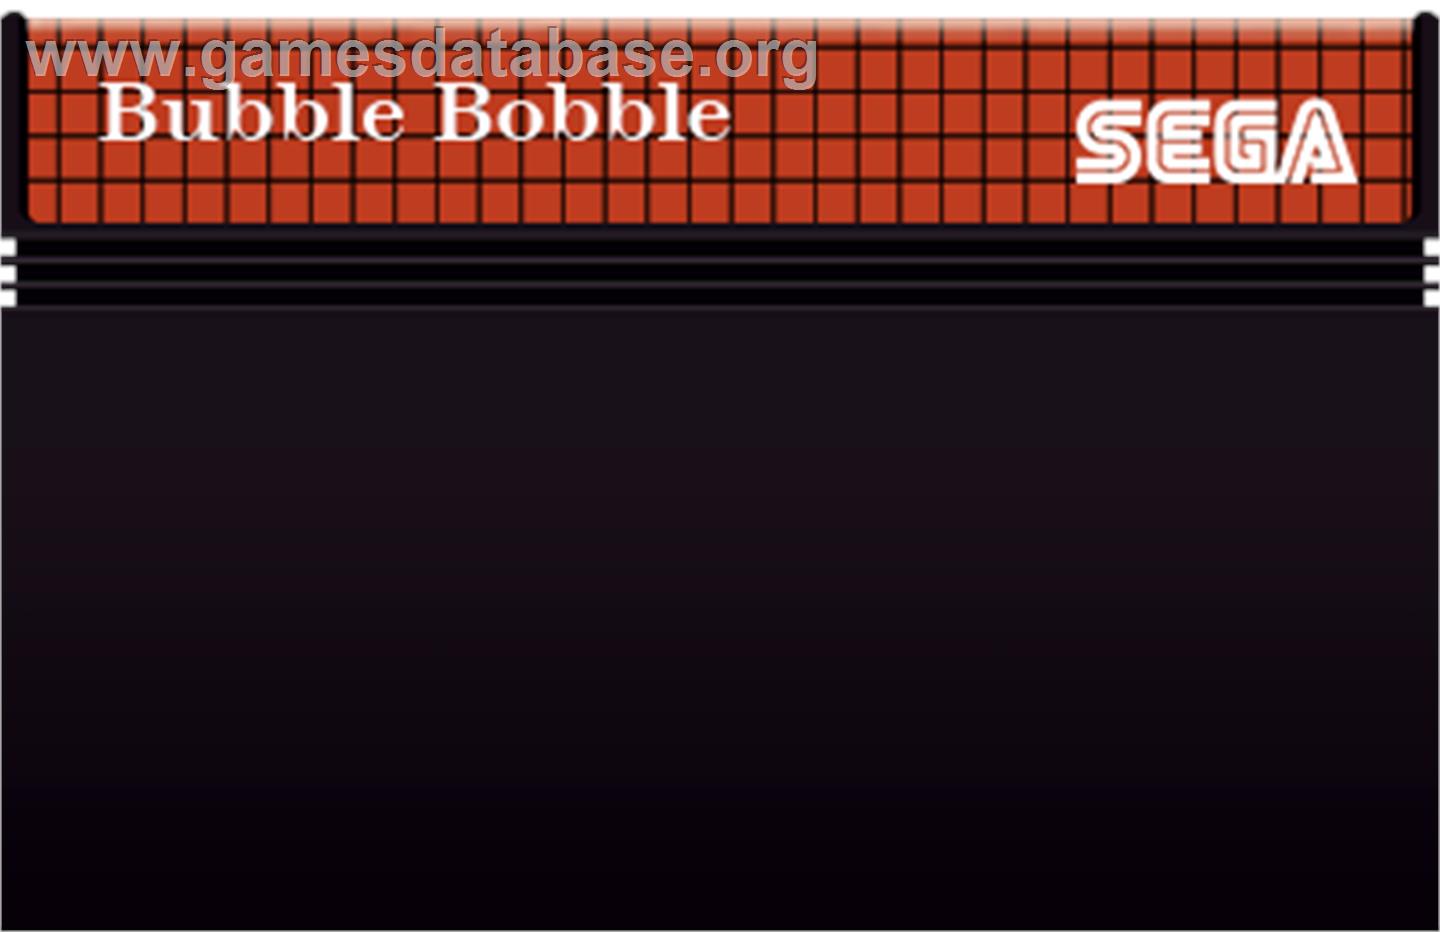 Bubble Bobble - Sega Master System - Artwork - Cartridge